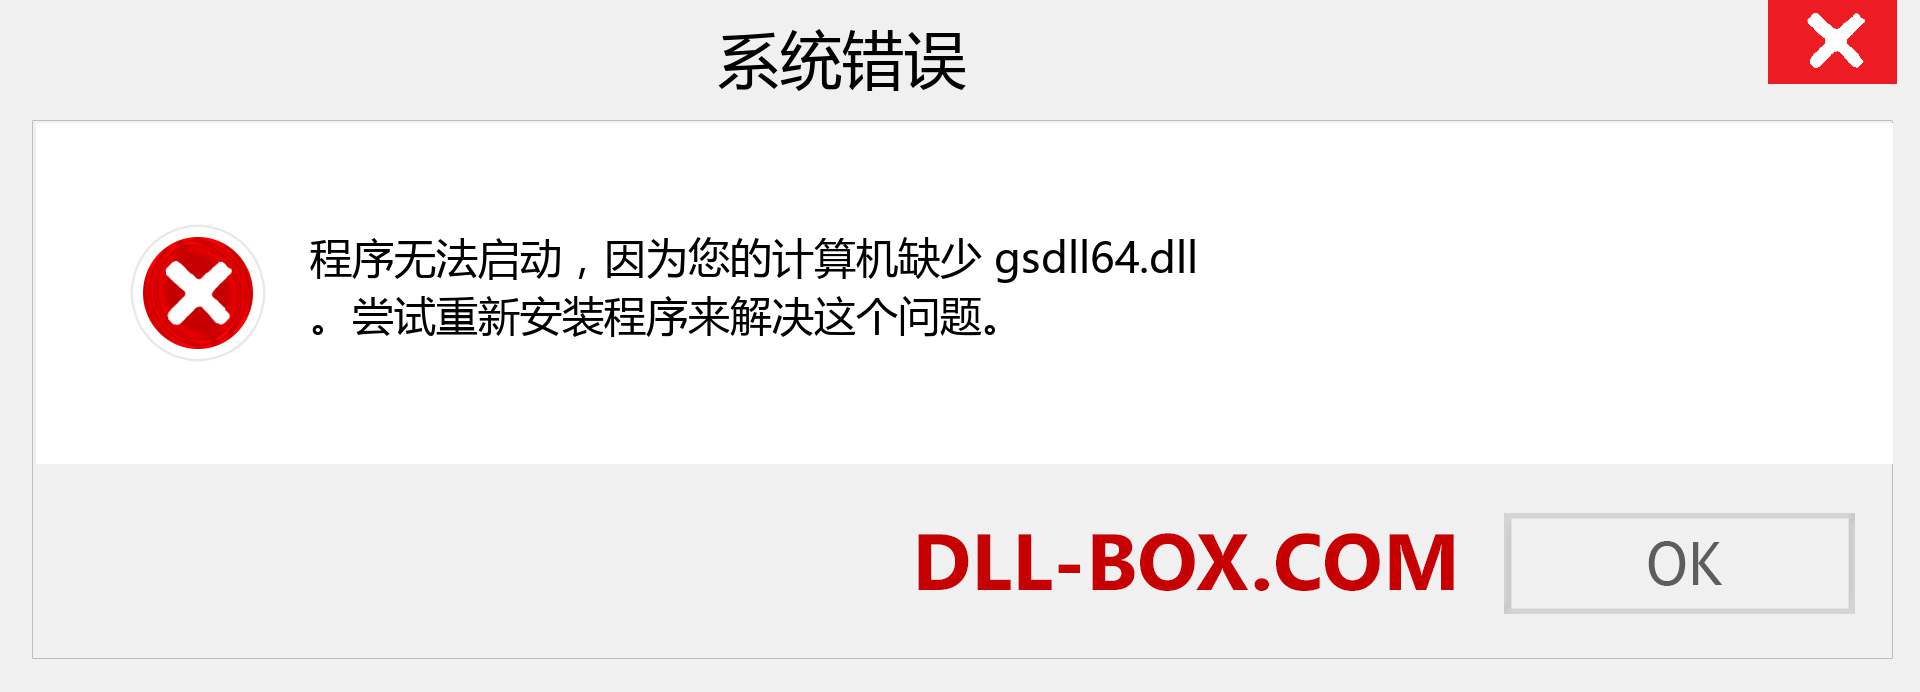 gsdll64.dll 文件丢失？。 适用于 Windows 7、8、10 的下载 - 修复 Windows、照片、图像上的 gsdll64 dll 丢失错误